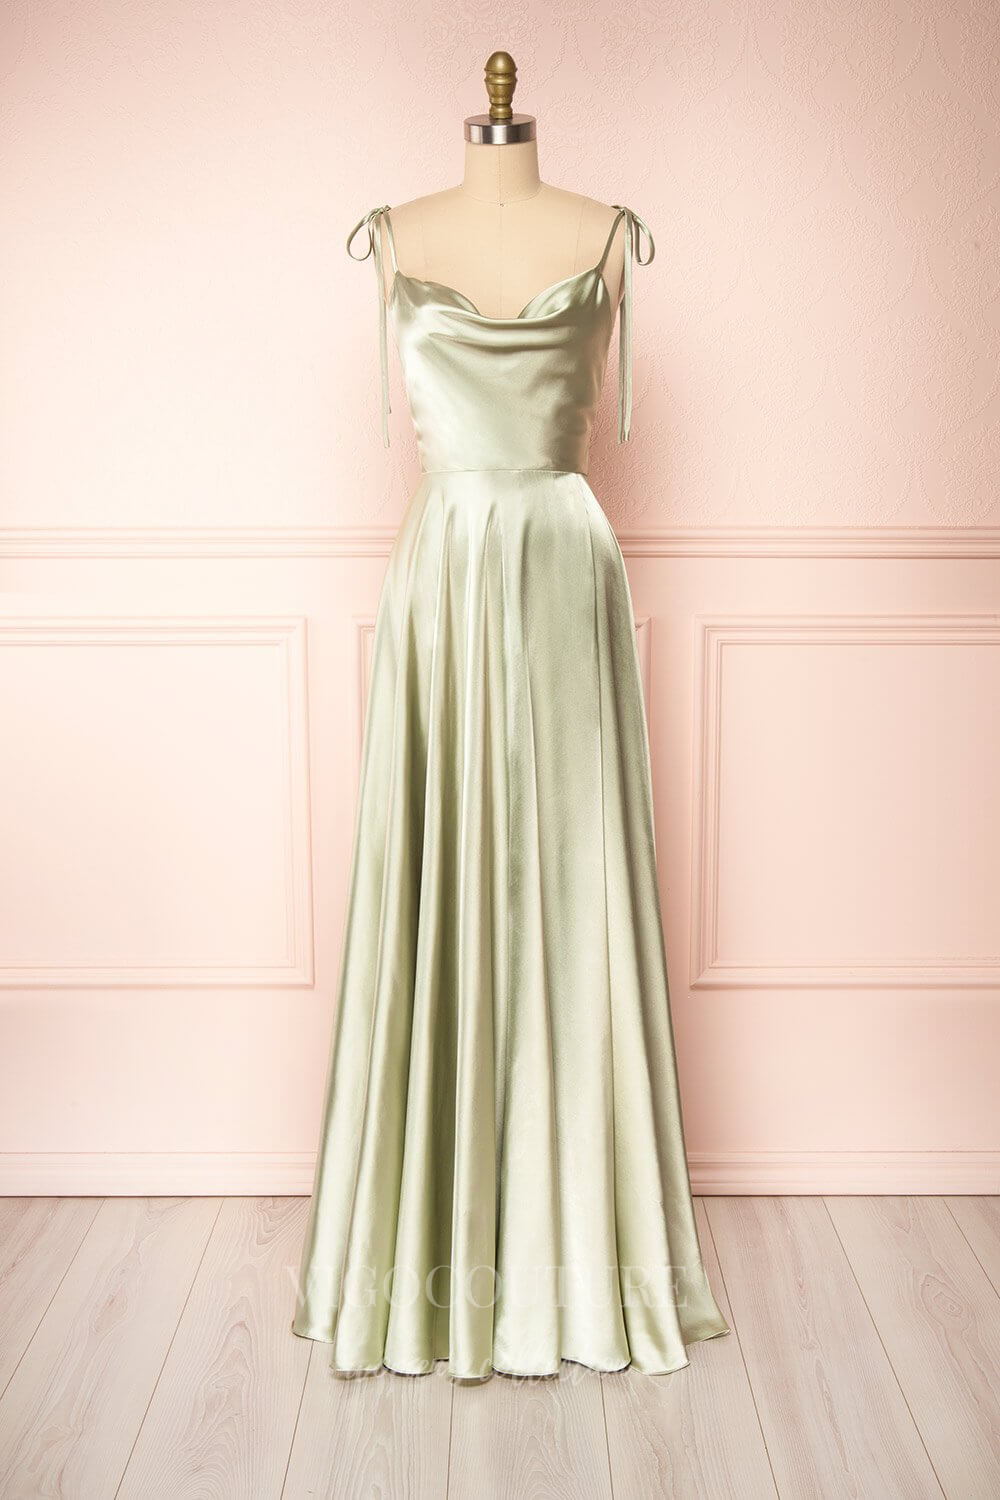 vigocouture-Blue Spaghetti Strap Prom Dress 20579-Prom Dresses-vigocouture-Sage-US2-